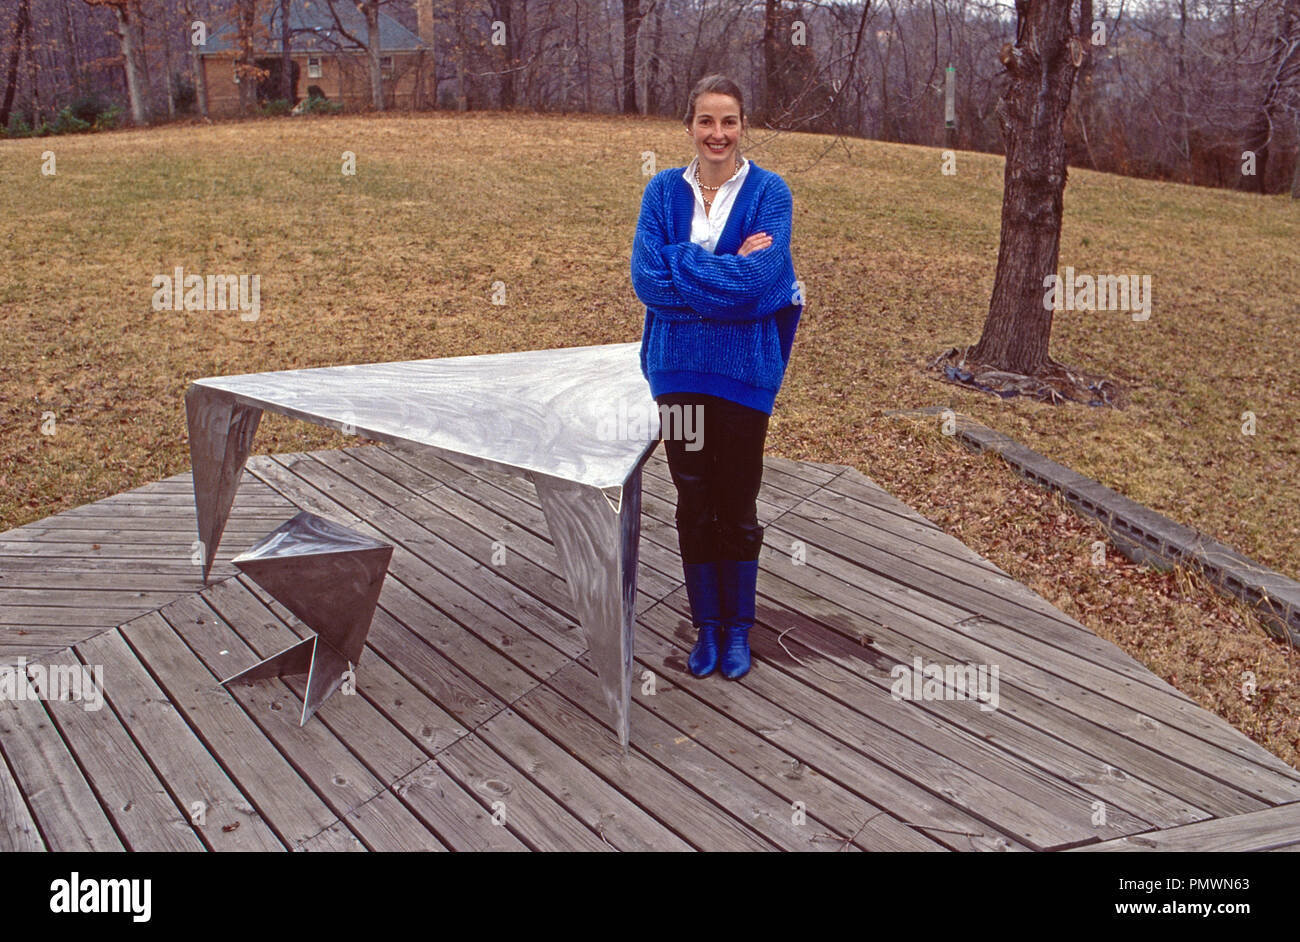 Erherzogin Gabriela von Habsburg mit einem ihrer Objekte als Bildhauerin, 1991. Archduchess Gabriela of Habsburg with one of her sculptures, 1991. Stock Photo